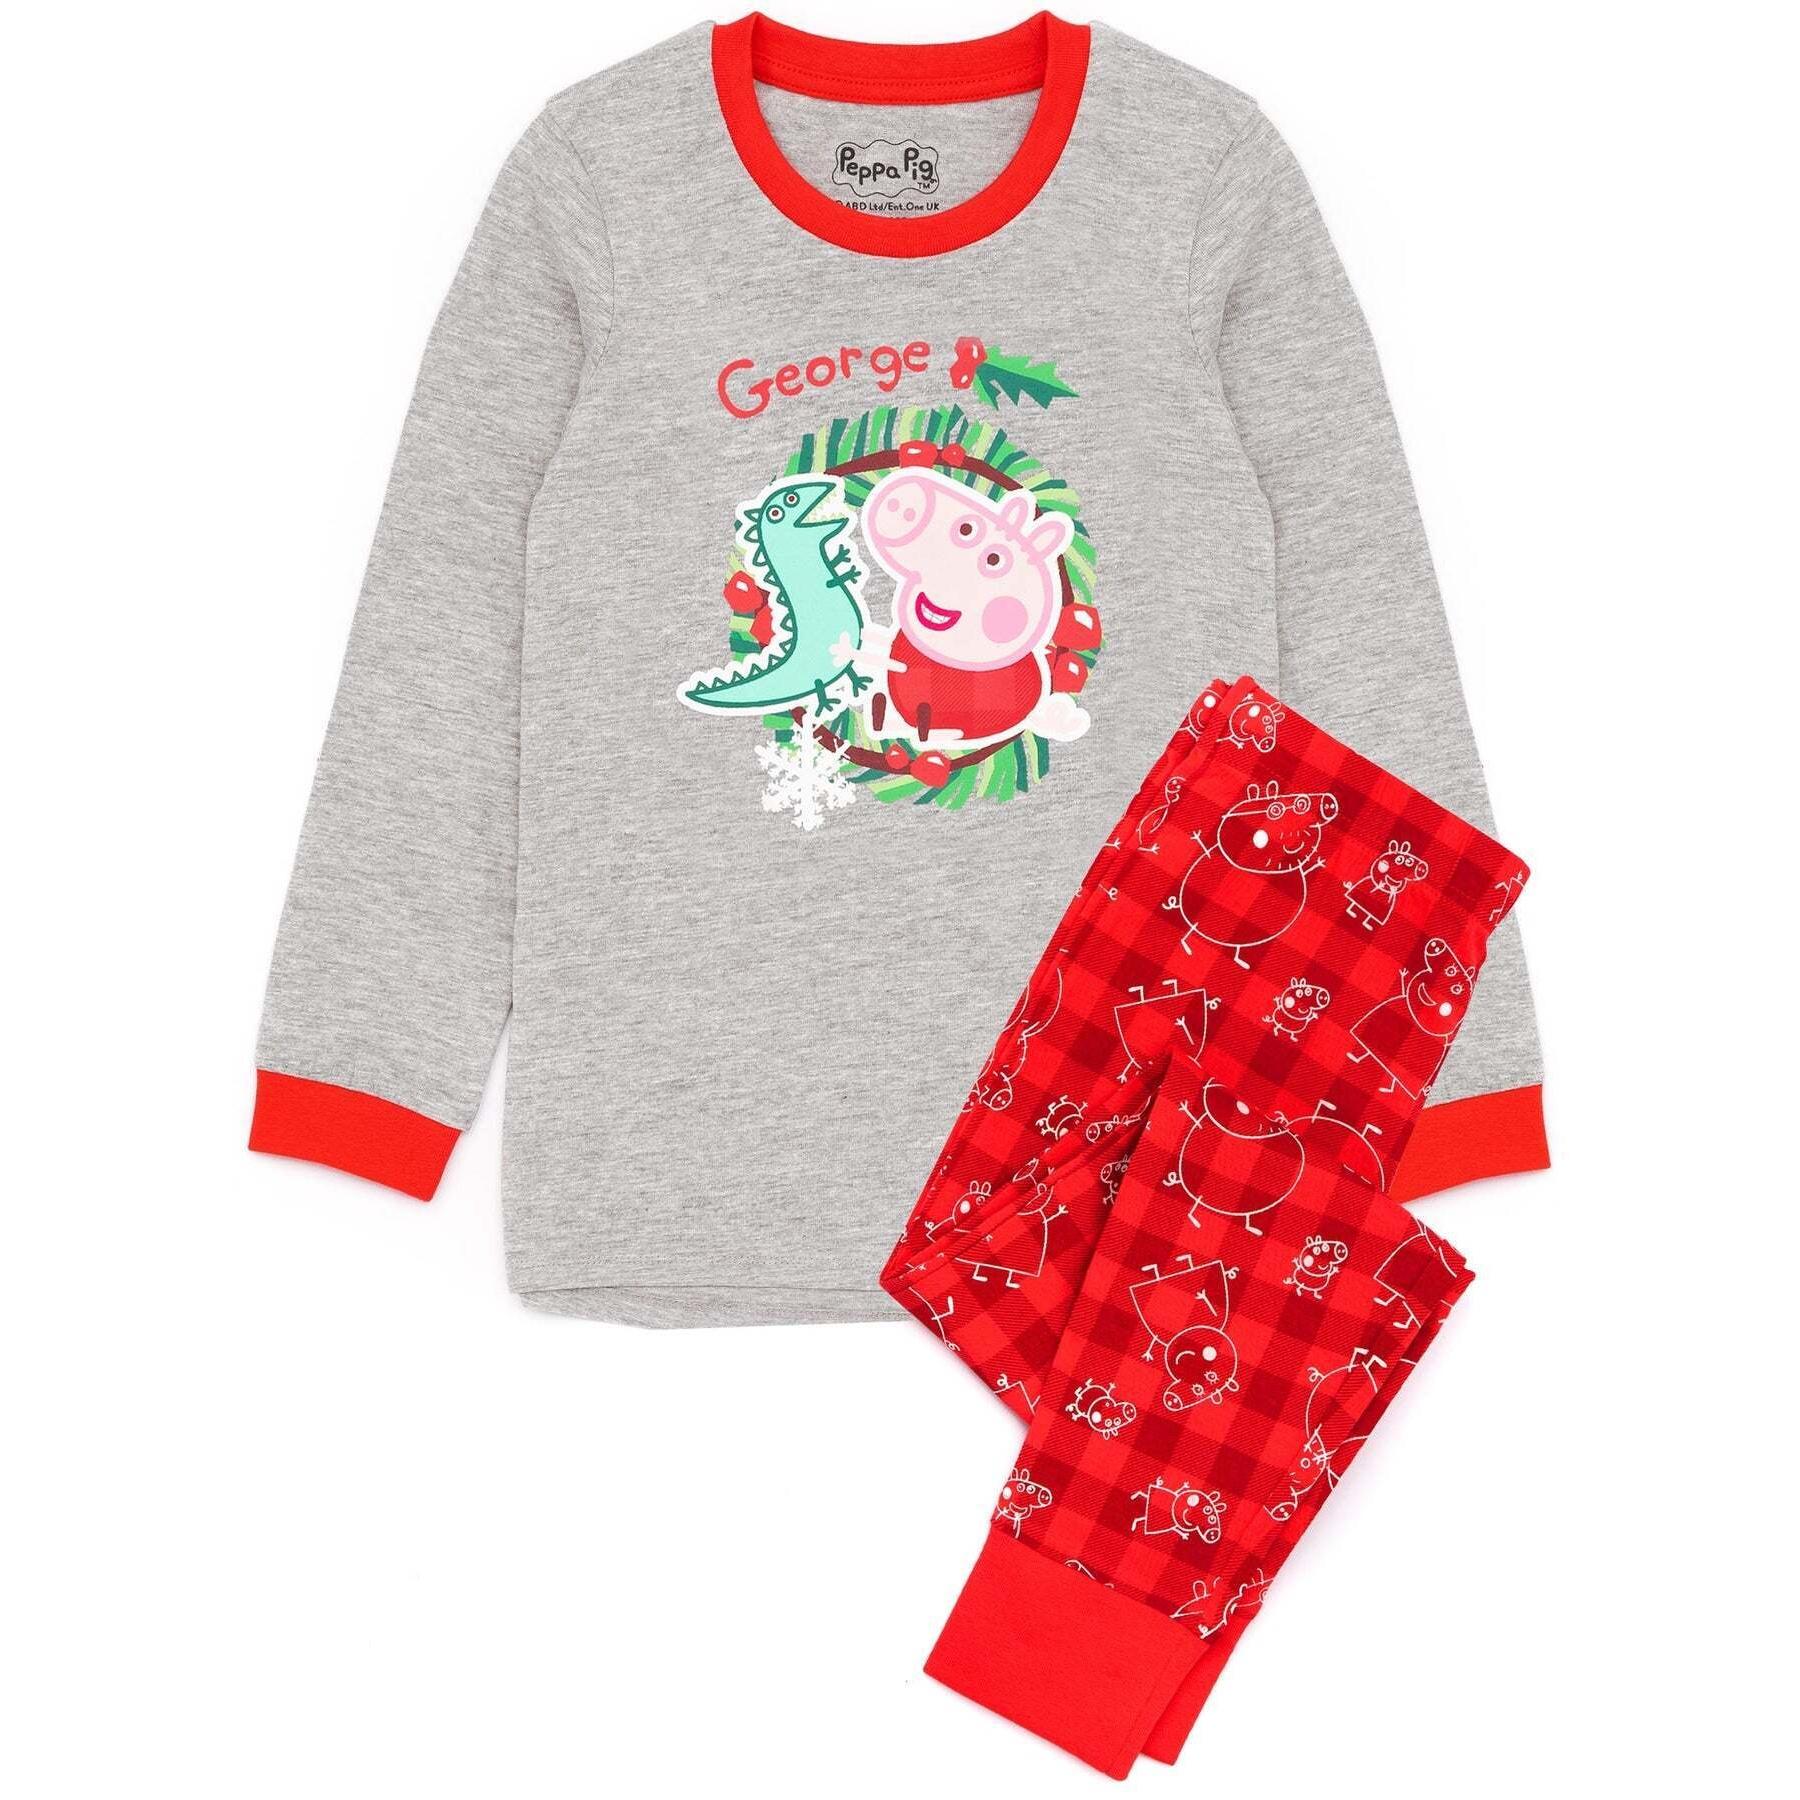 Peppa Pig Jungen George Pig Weihnachtspyjama-Set